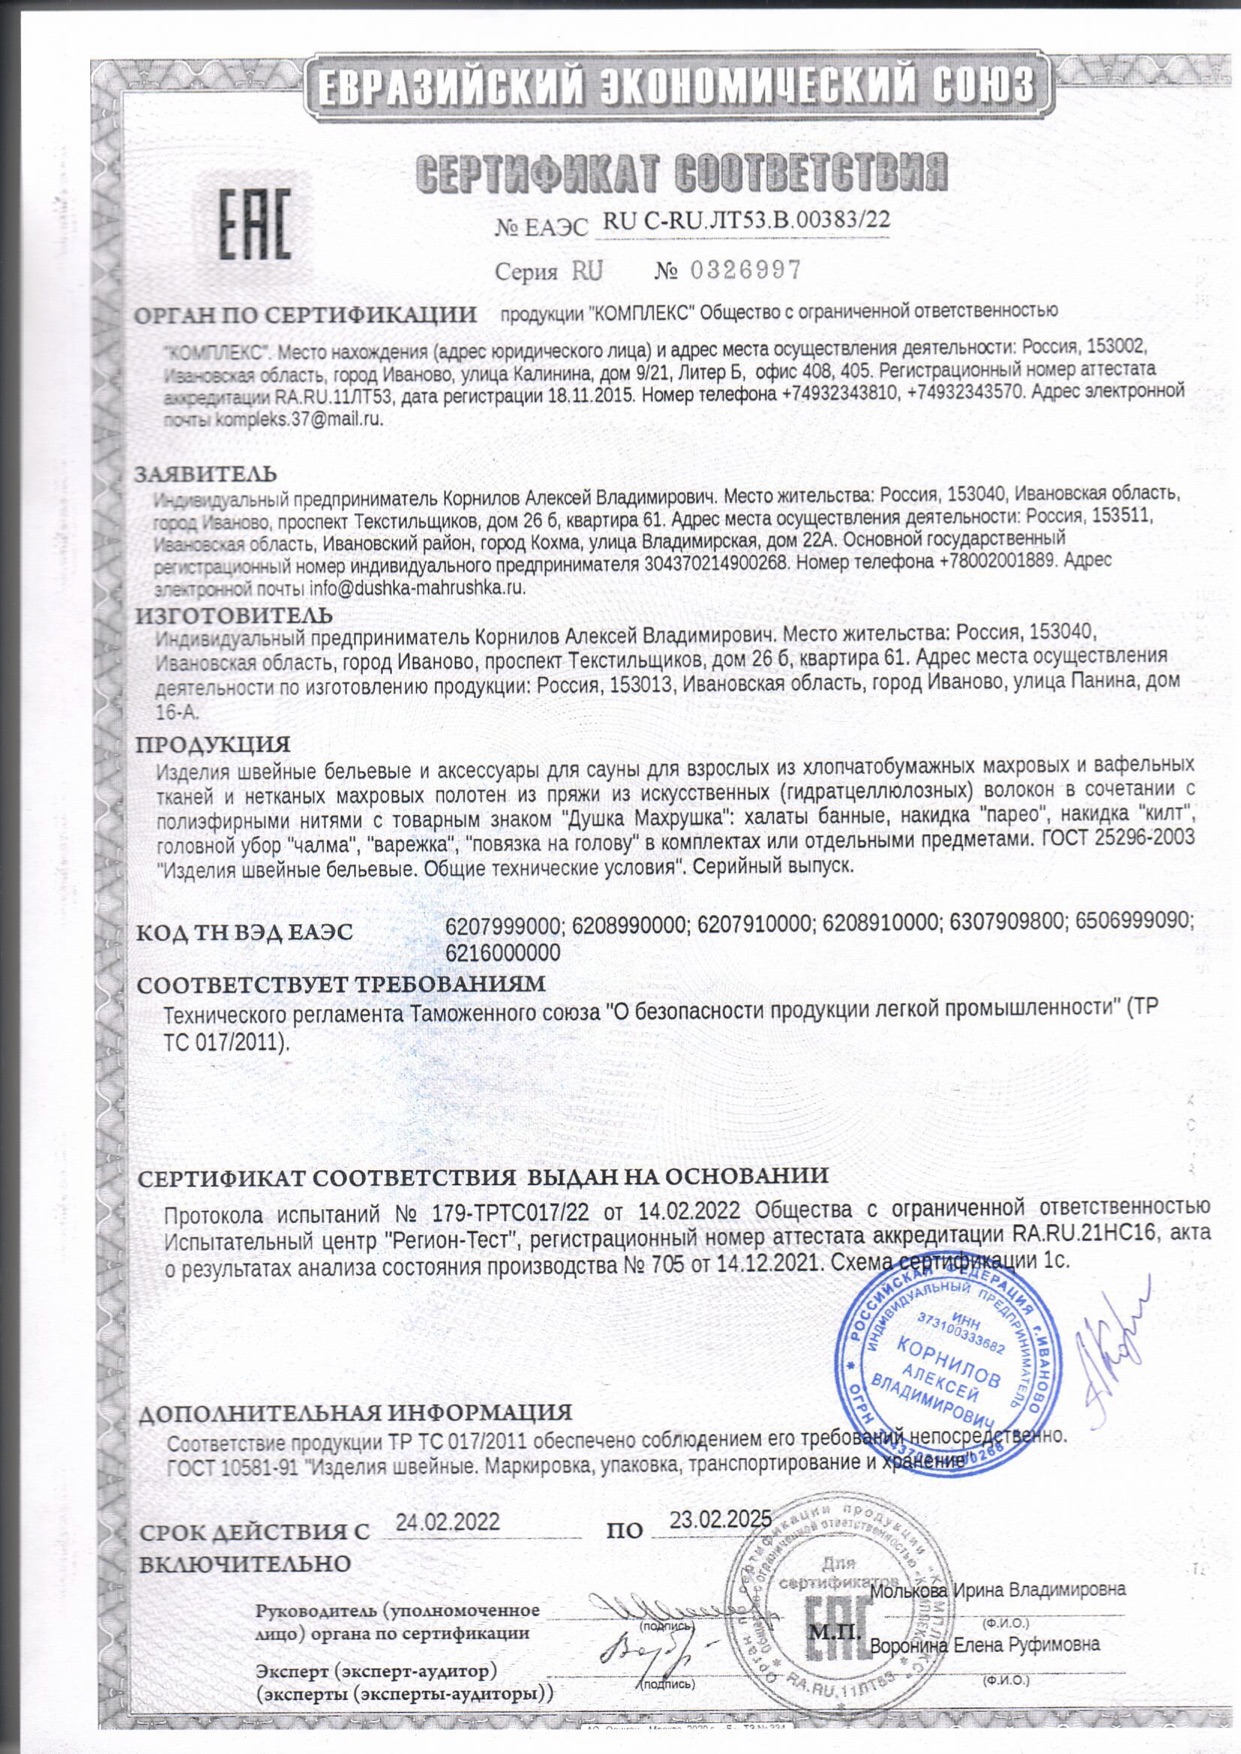 Сертификат на аксессуары для сауны до 23.02.2025 г.